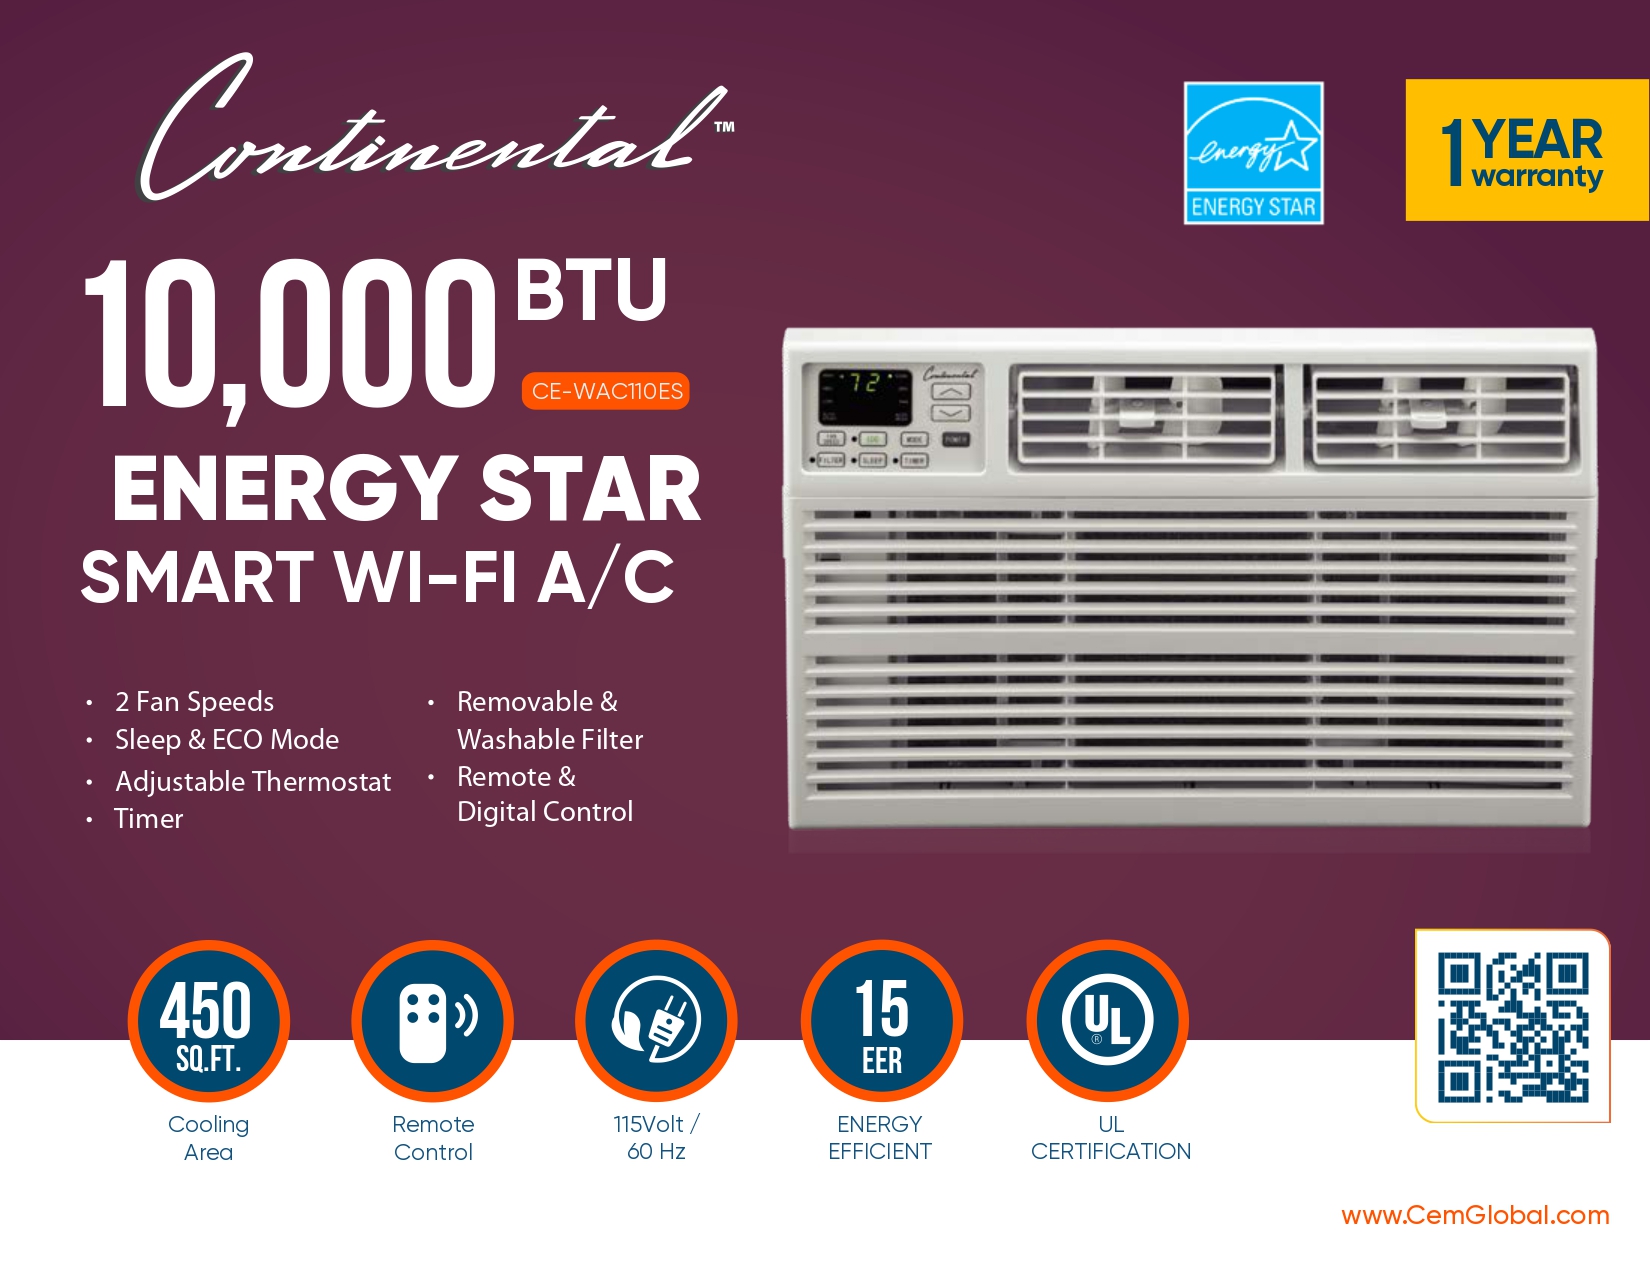 10,000 BTU ENERGY STAR SMART WI-FI A/C